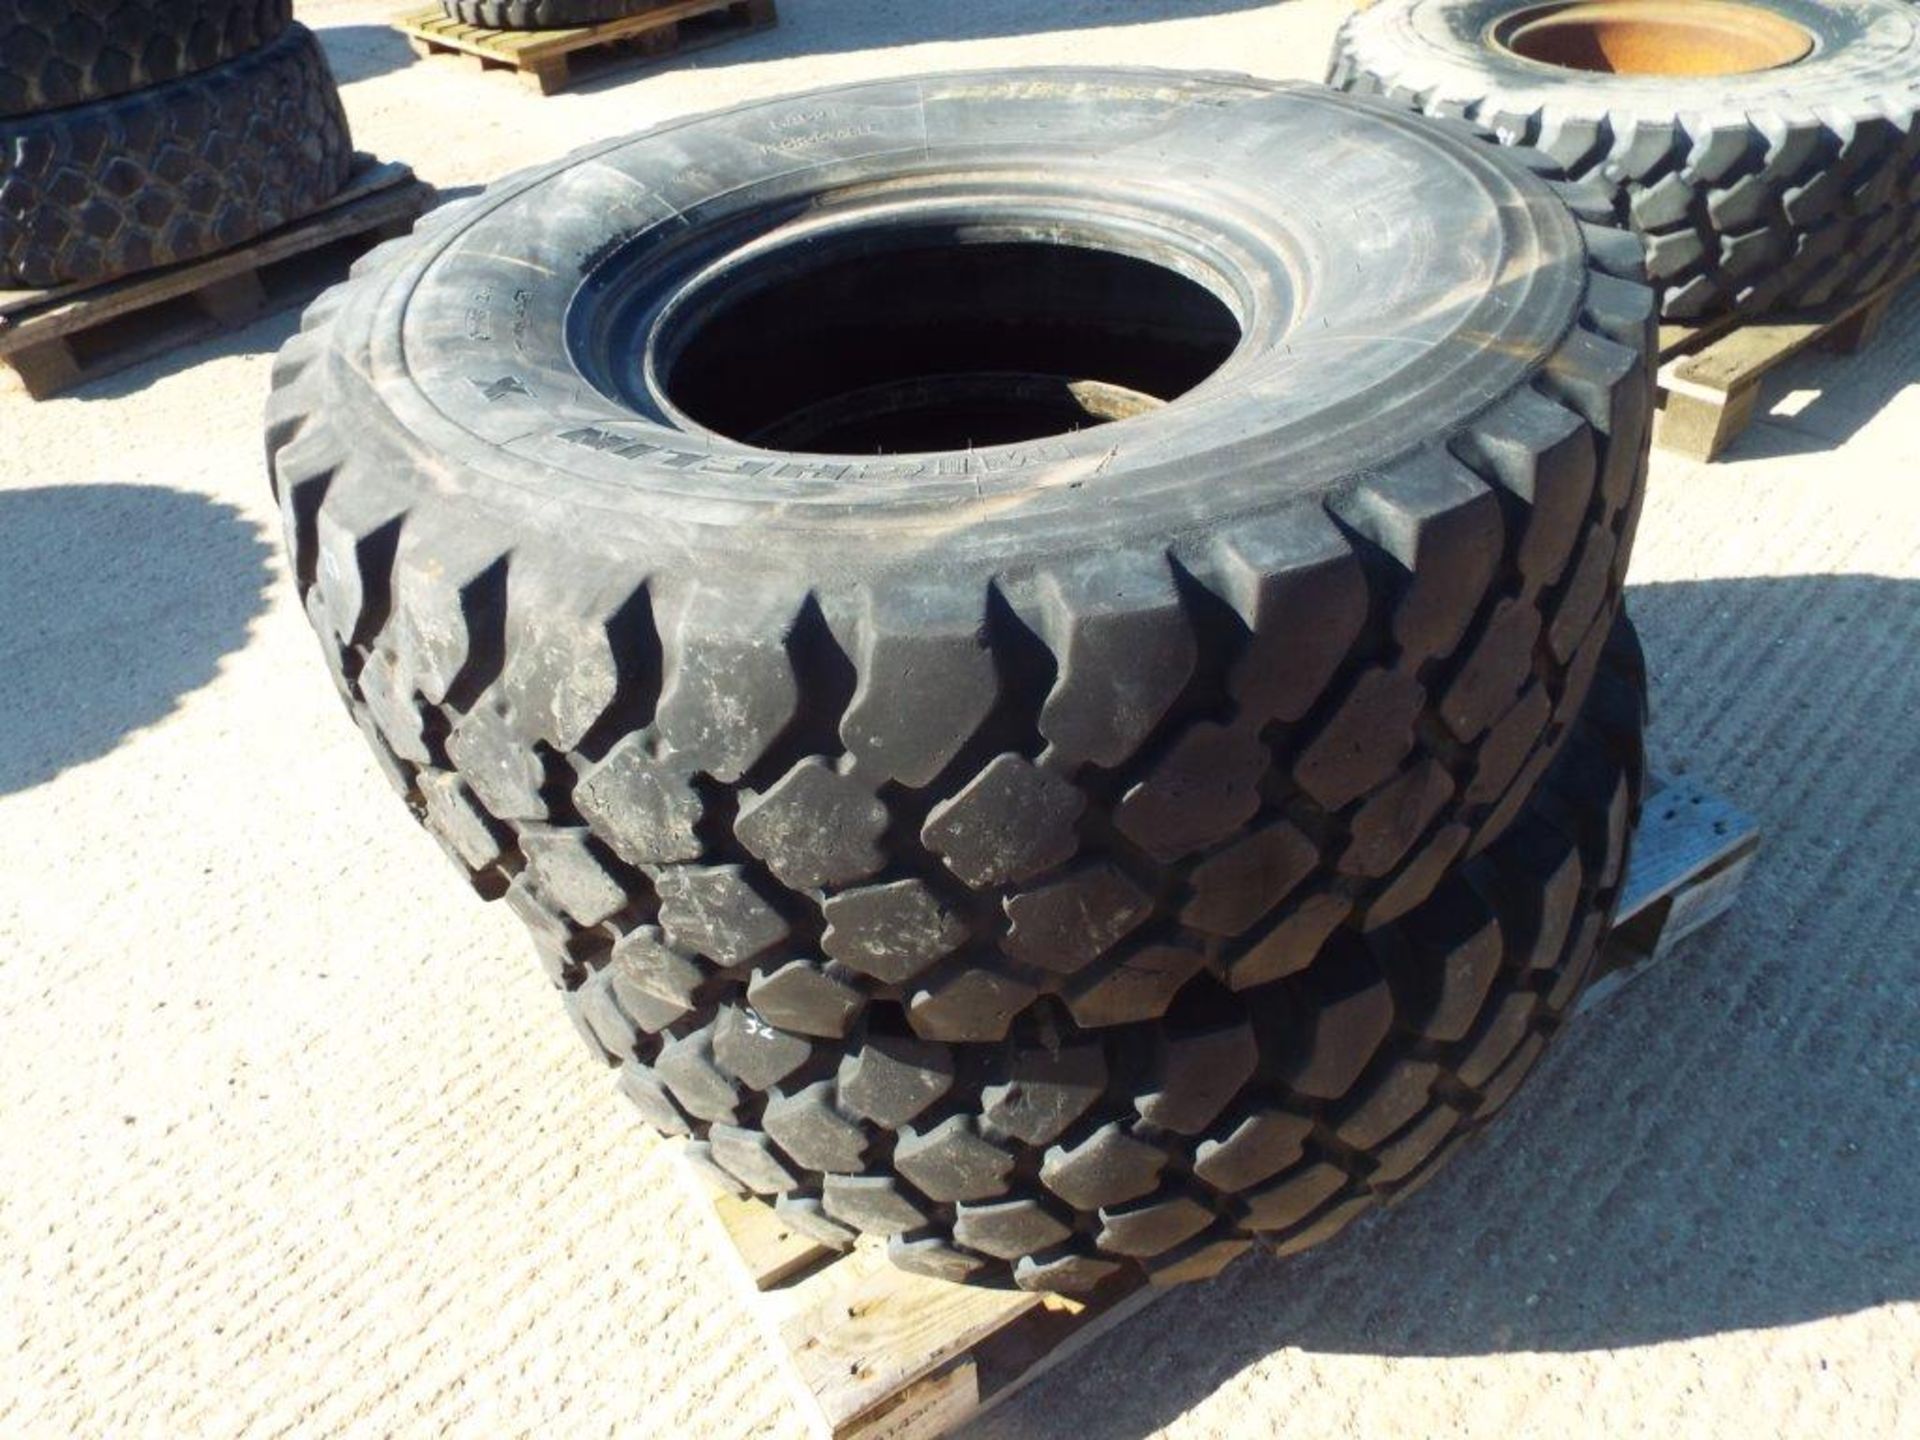 2 x Michelin XZL 395/85 R20 Tyres